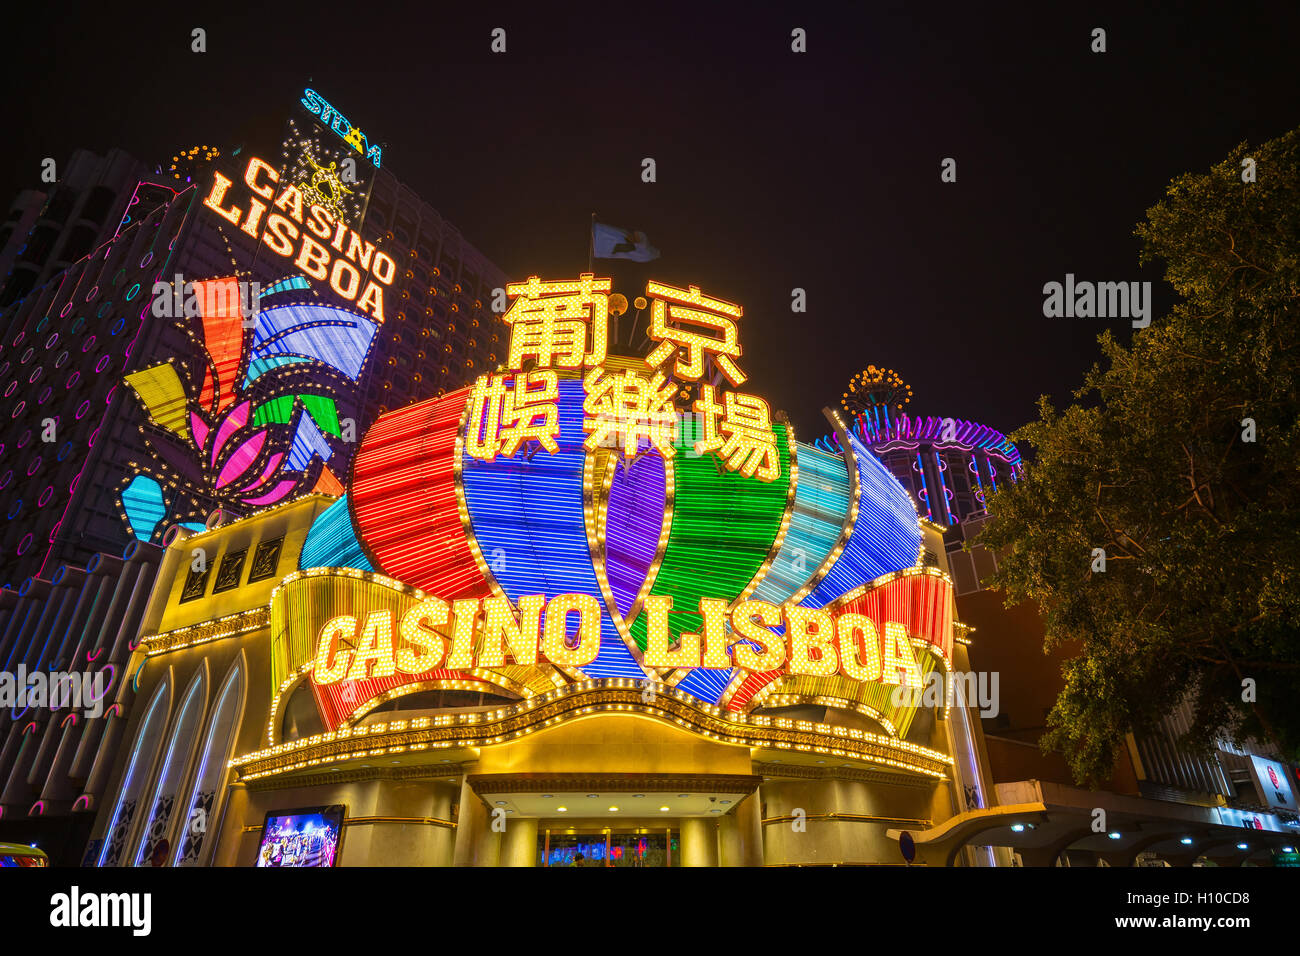 Macau, Macao S.A.R. - Le 12 mars 2016 : Casino Lisboa est l'un des plus célèbres hôtels casinos à Macao, Chine. Banque D'Images